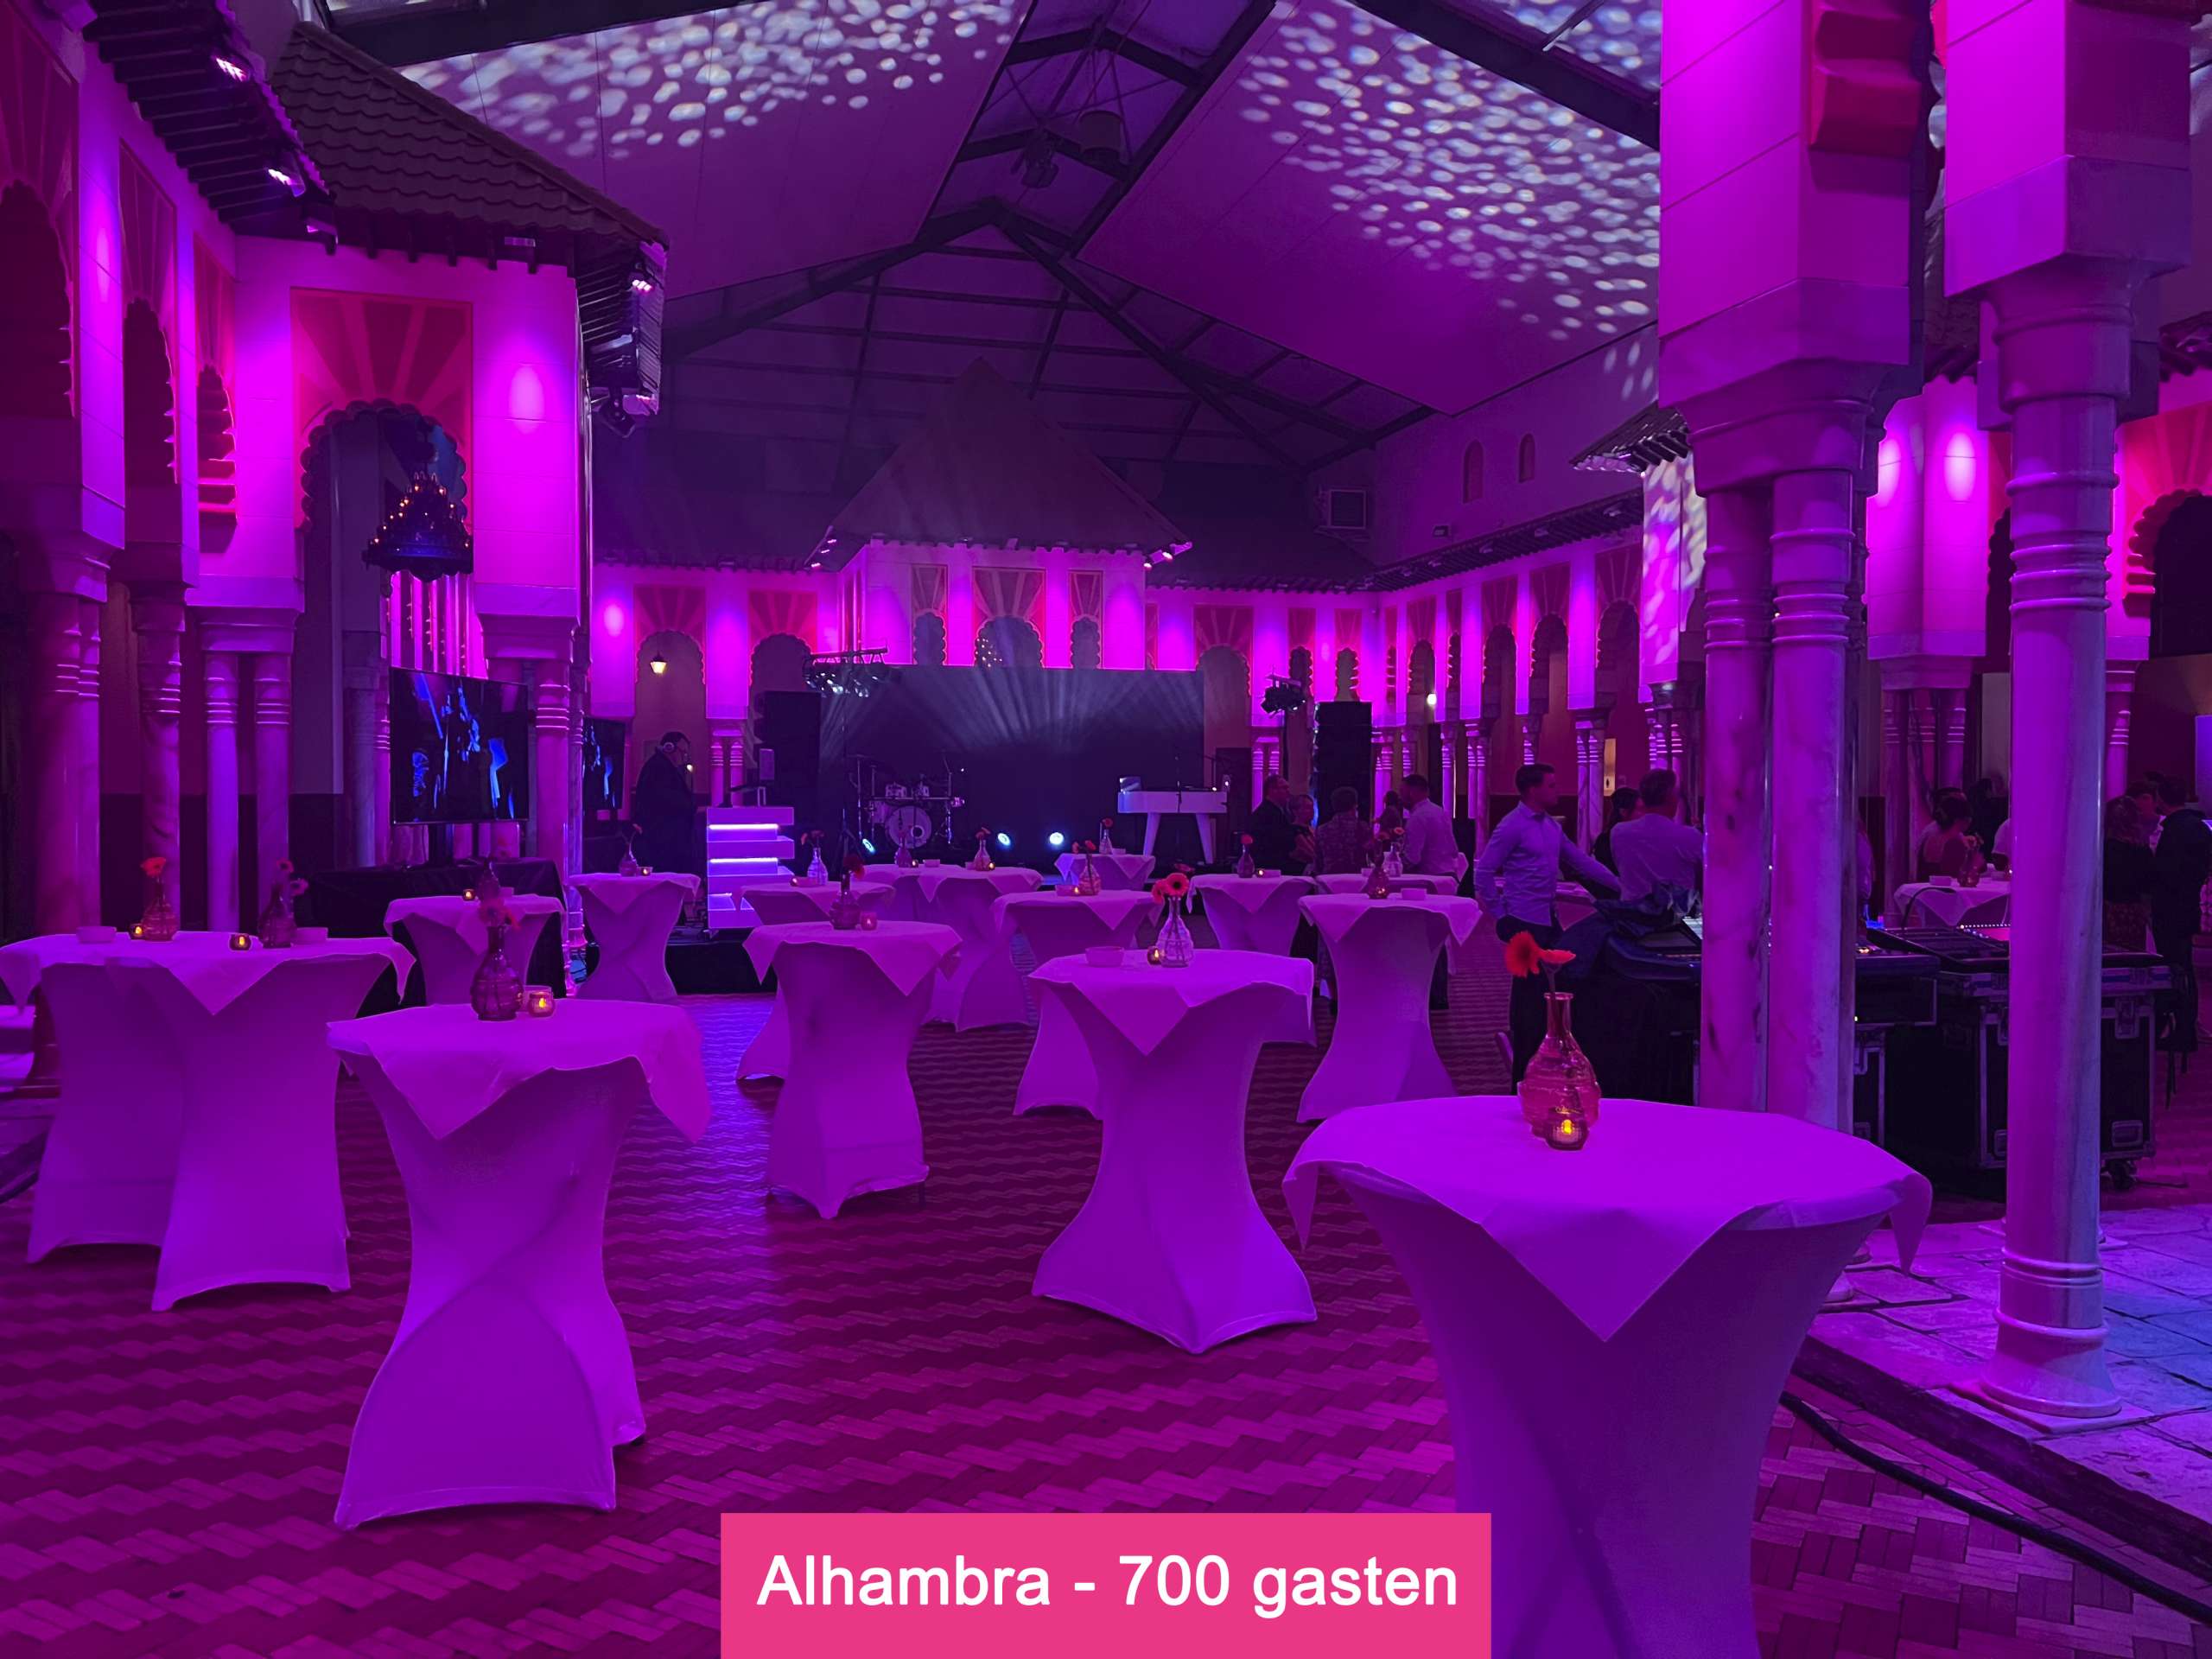 Alhambra - 700 gasten